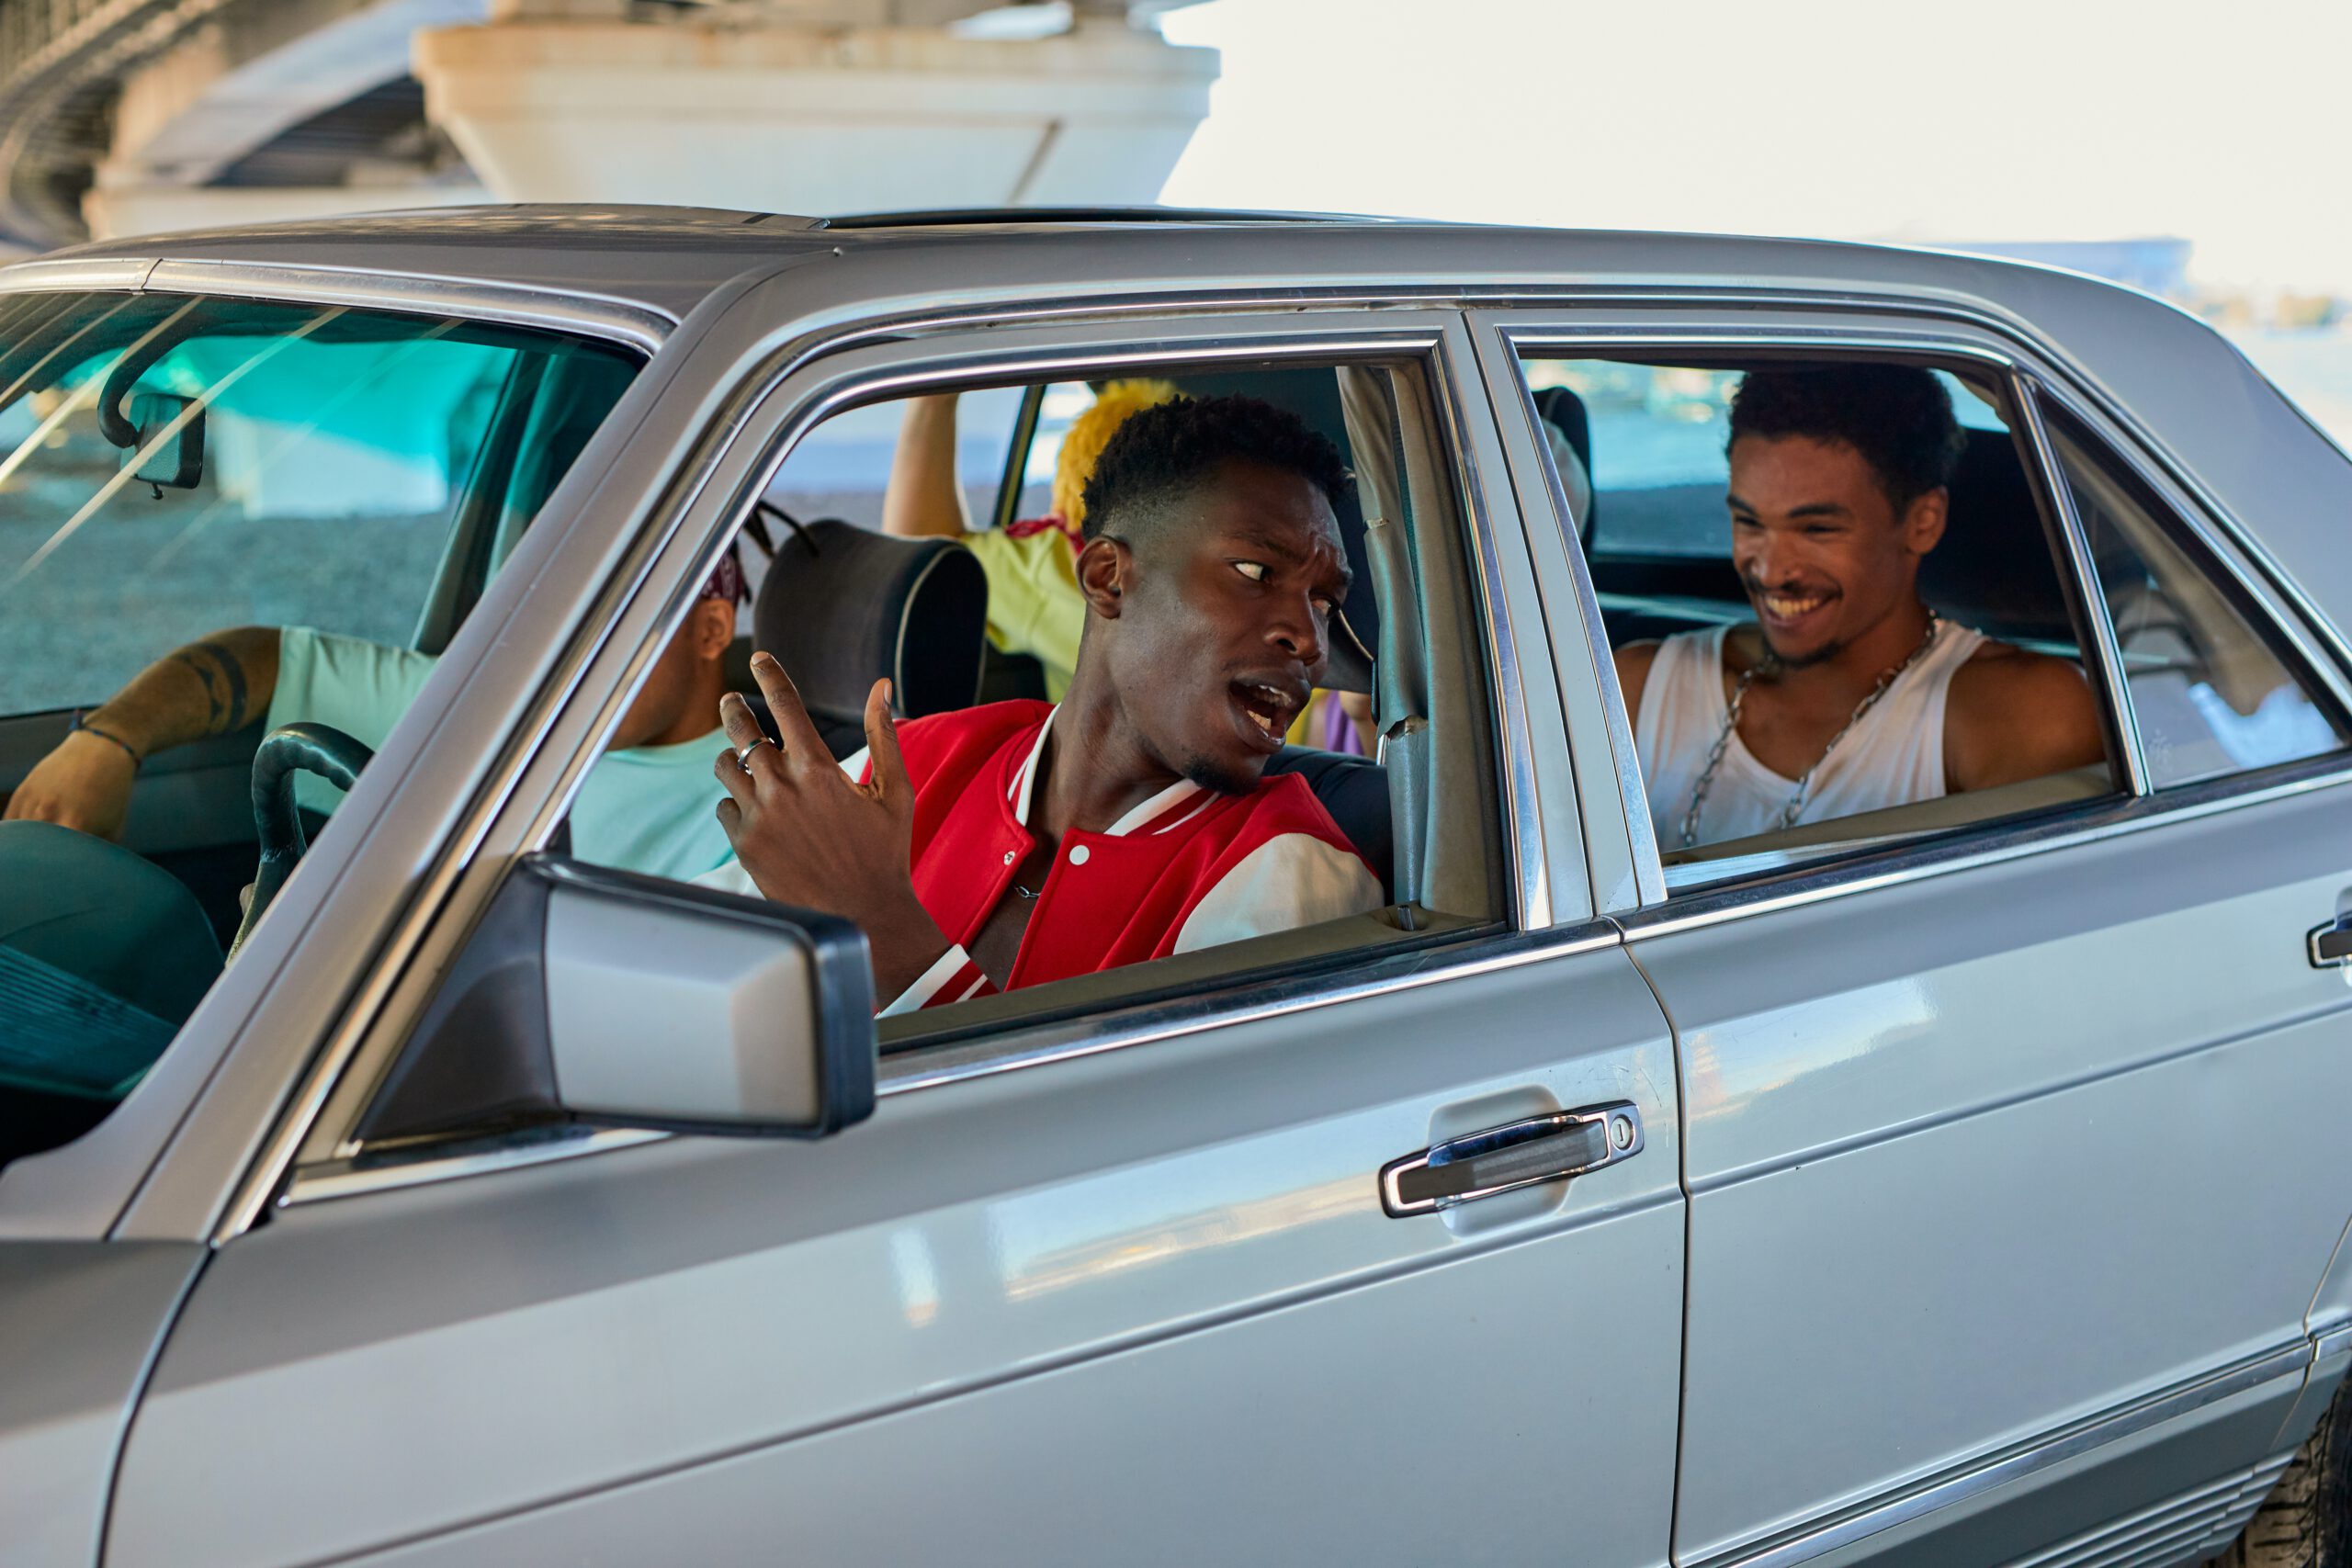 Nastolatkowie siedzący i śmiejący się do siebie w starym srebrnym samochodzie